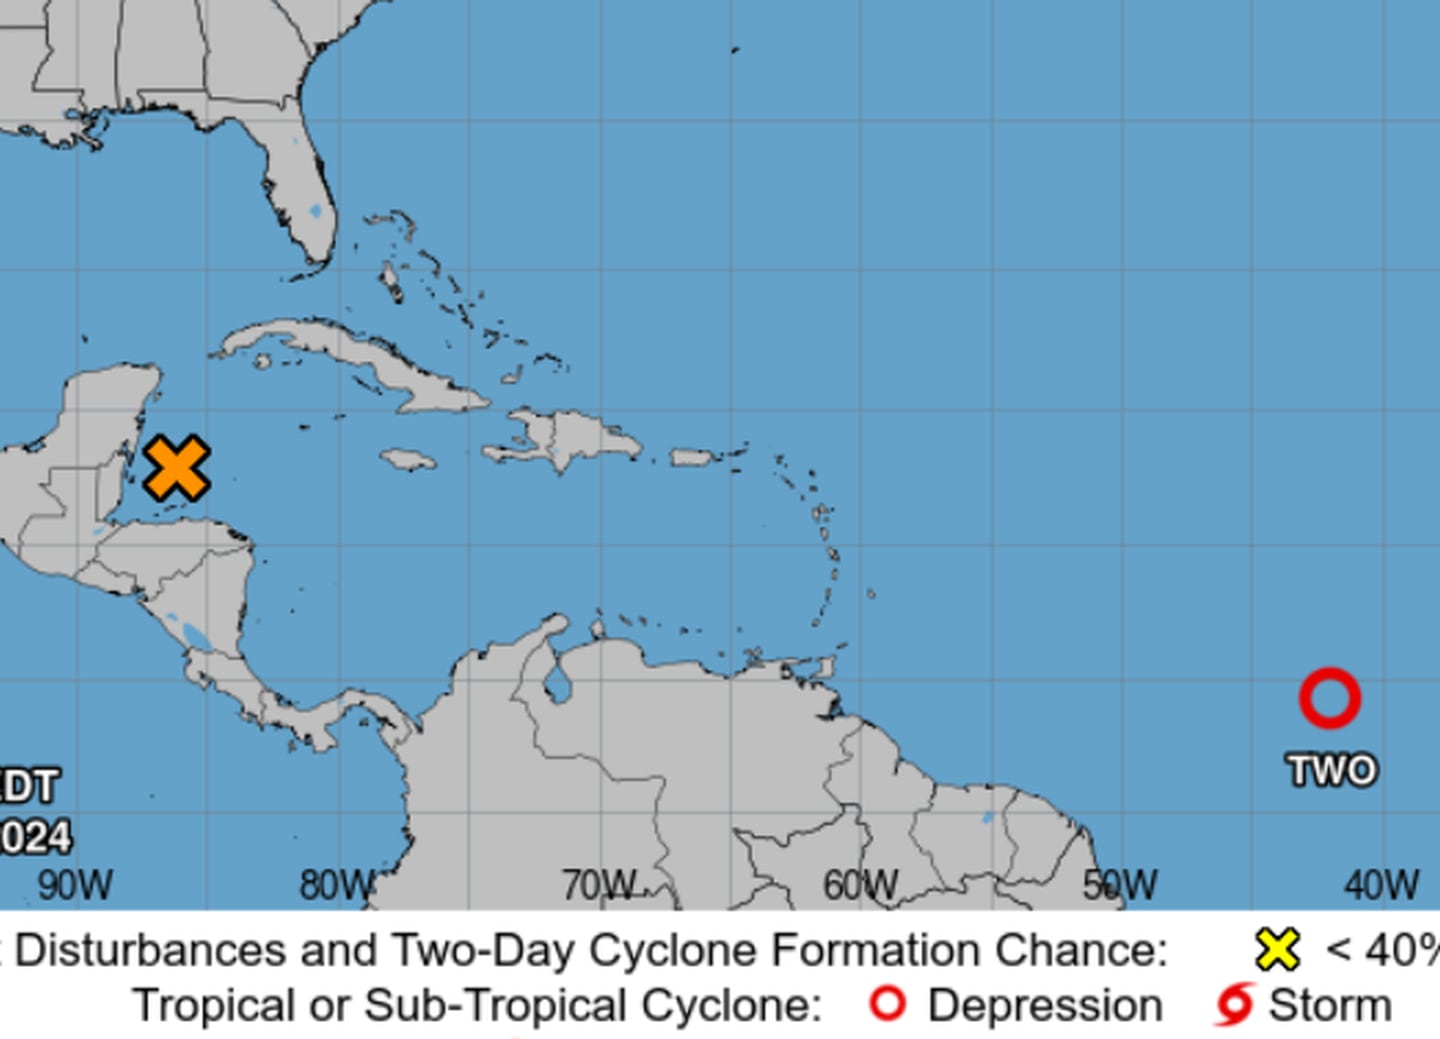 El círculo rojo en la parte inferior derecha muestra la ubicación de una depresión tropical que el fin de semana puede escalar a tormenta tropical en su trayectoria hacia las Antillas menores. Imagen: CNH.